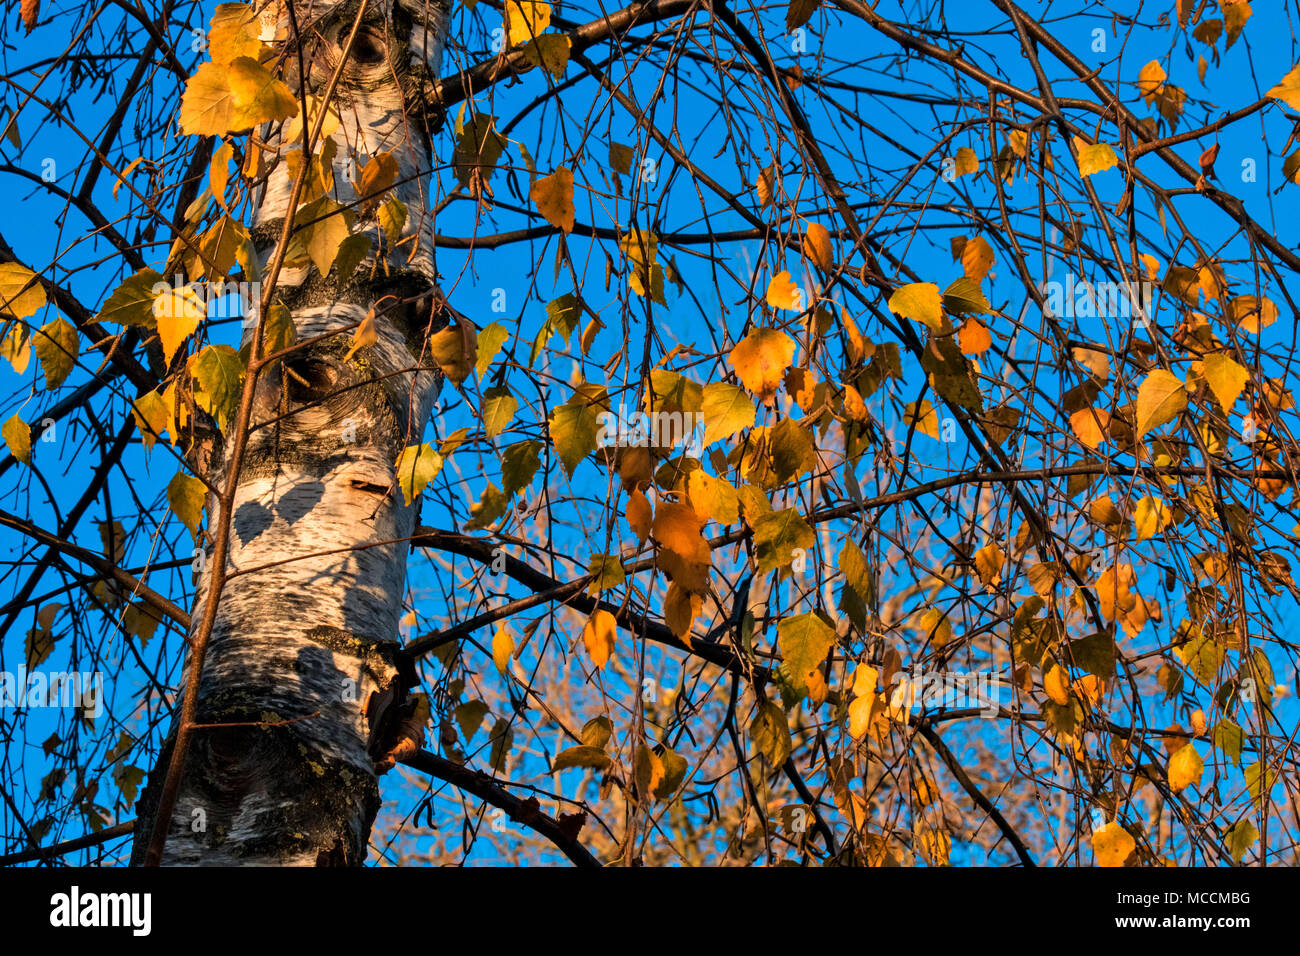 Sun dappled Ocker Herbst Blätter auf eine Birke mit bunten Kontrast zu den strahlend blauen Himmel und Silhouette Niederlassungen Stockfoto